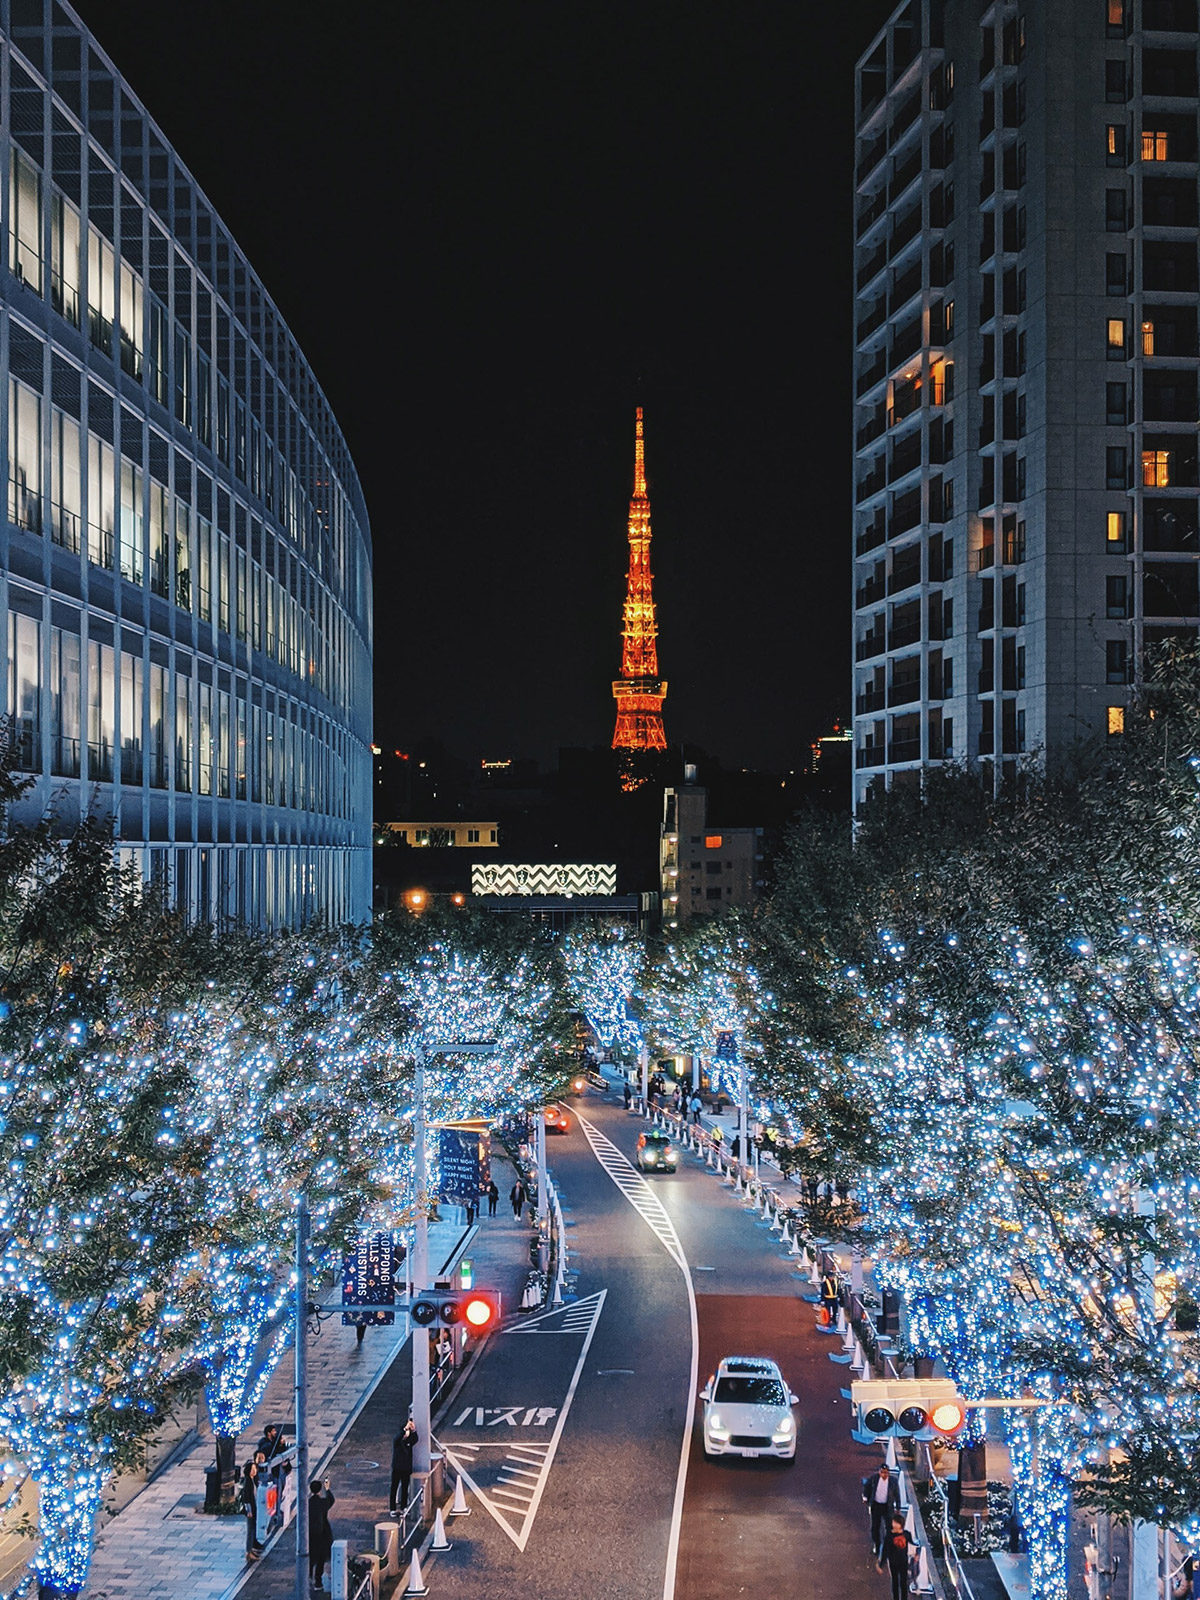 Illumination mit Blick auf den Tōkyō Tower. (Foto: note thanun auf Unsplash https://unsplash.com/photos/dOFpWEml0nw)